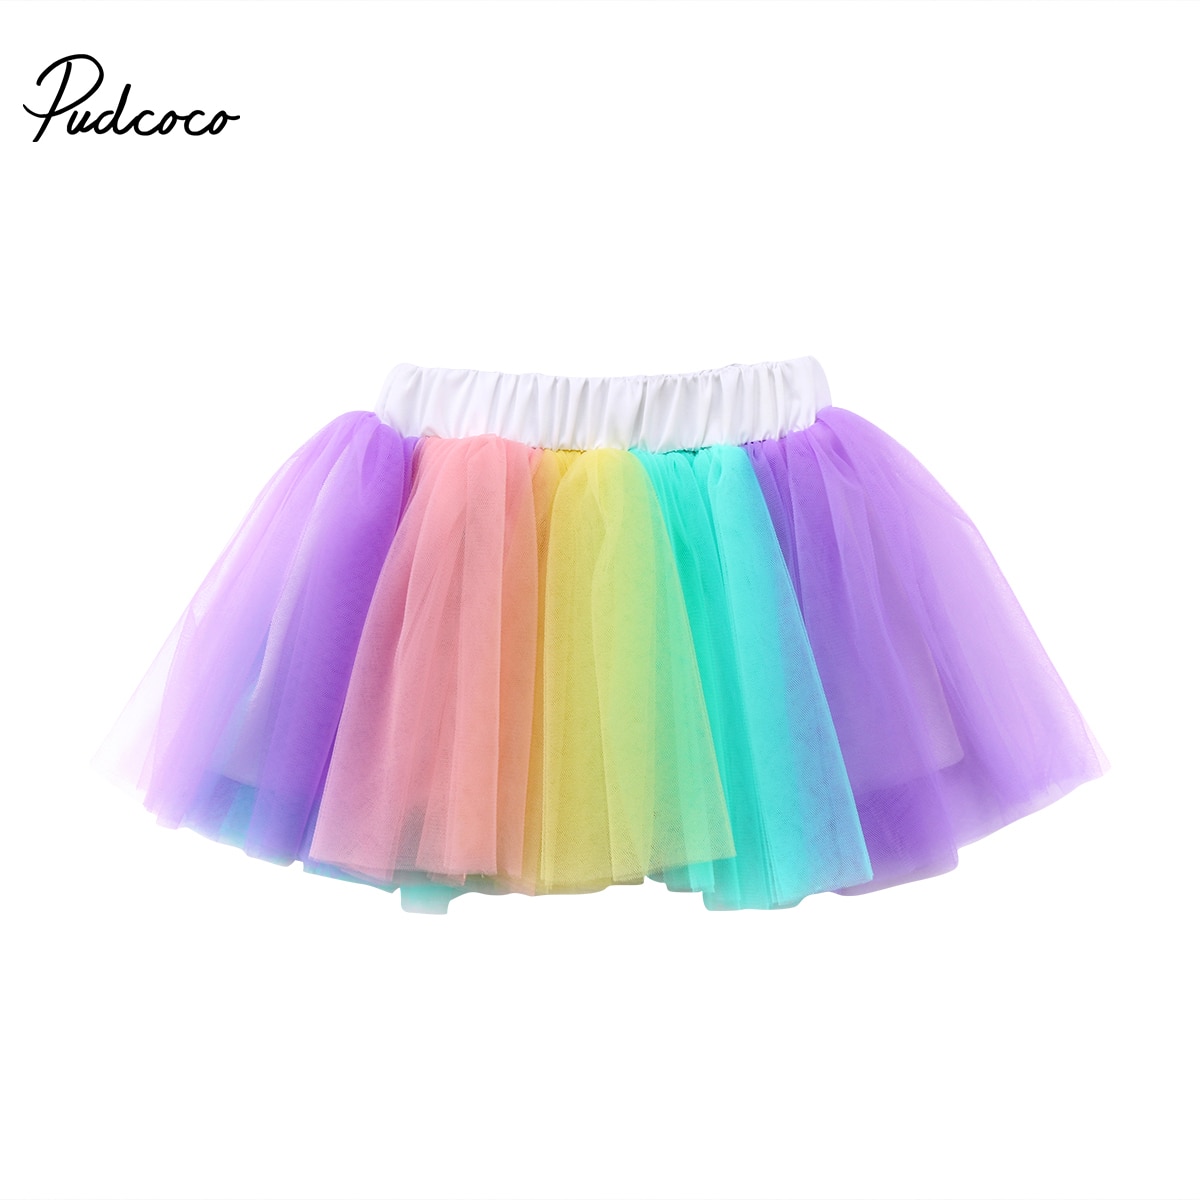 Gloednieuwe Mooie Peuter Infant Kids Baby Meisjes Prinses Dancewear Tutu Tulle Rok Kleurrijke Regenboog Kostuum Zomer 1-4T